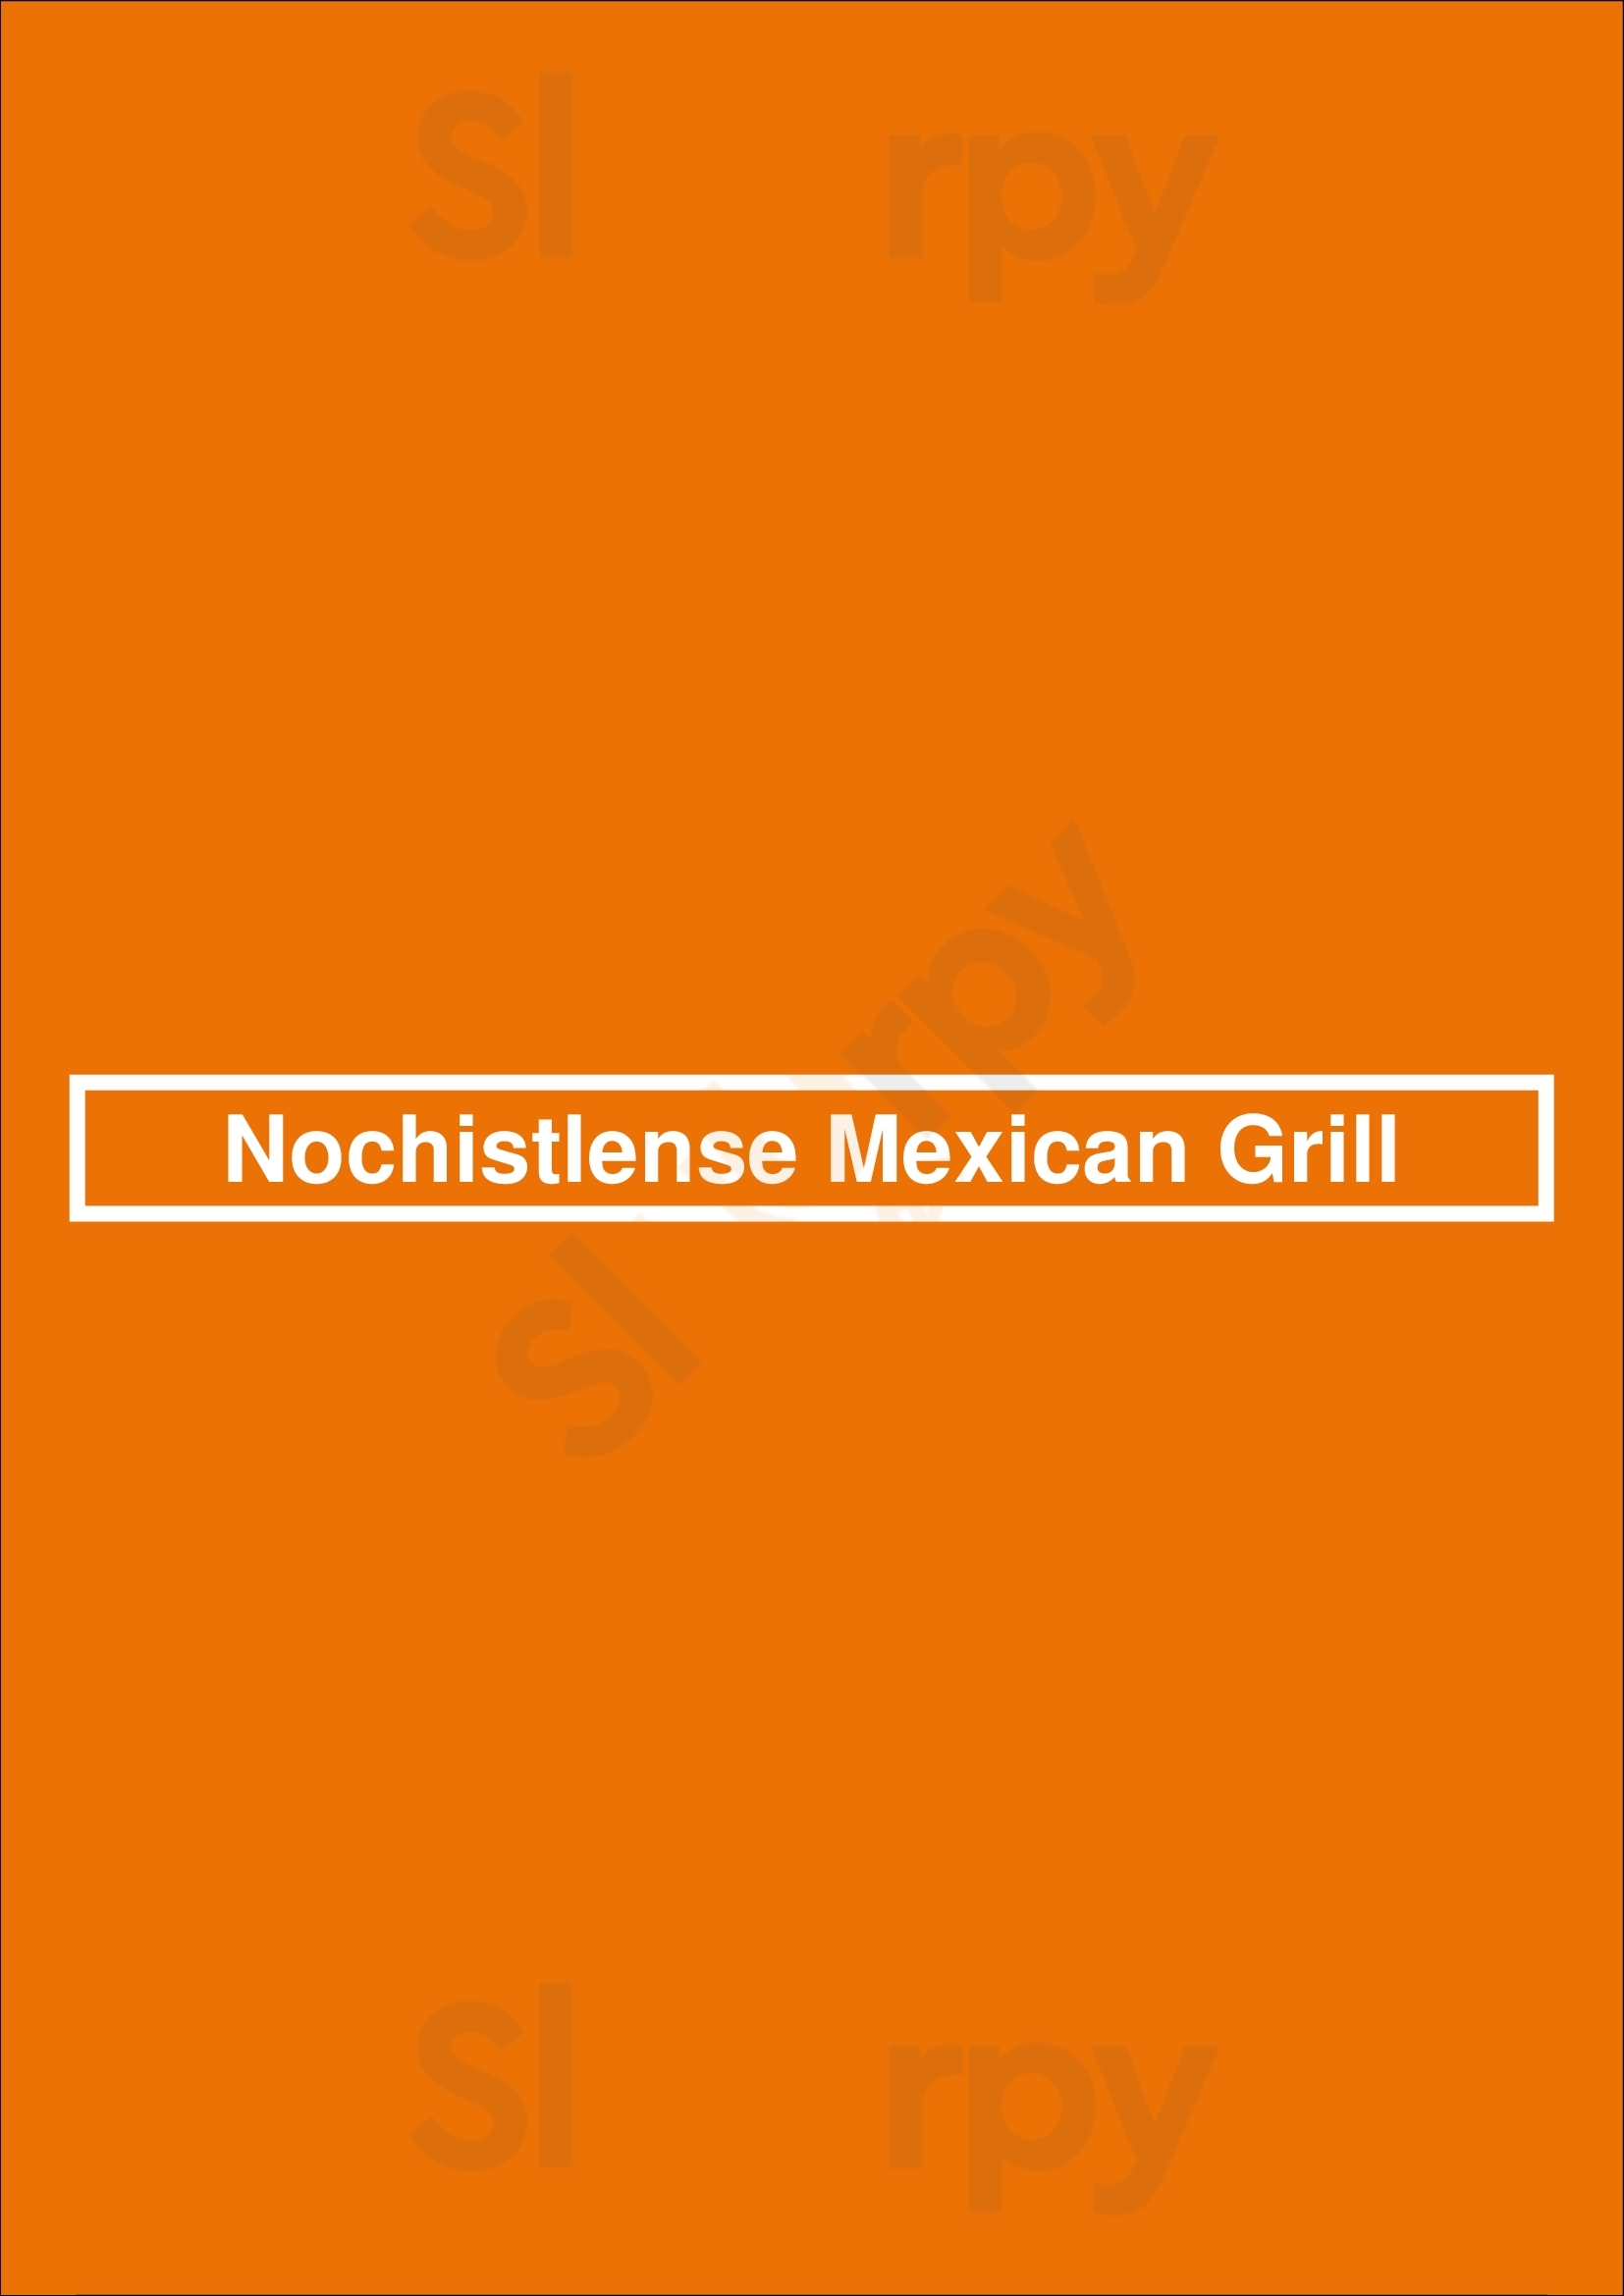 Nochistlense Mexican Grill Los Angeles Menu - 1